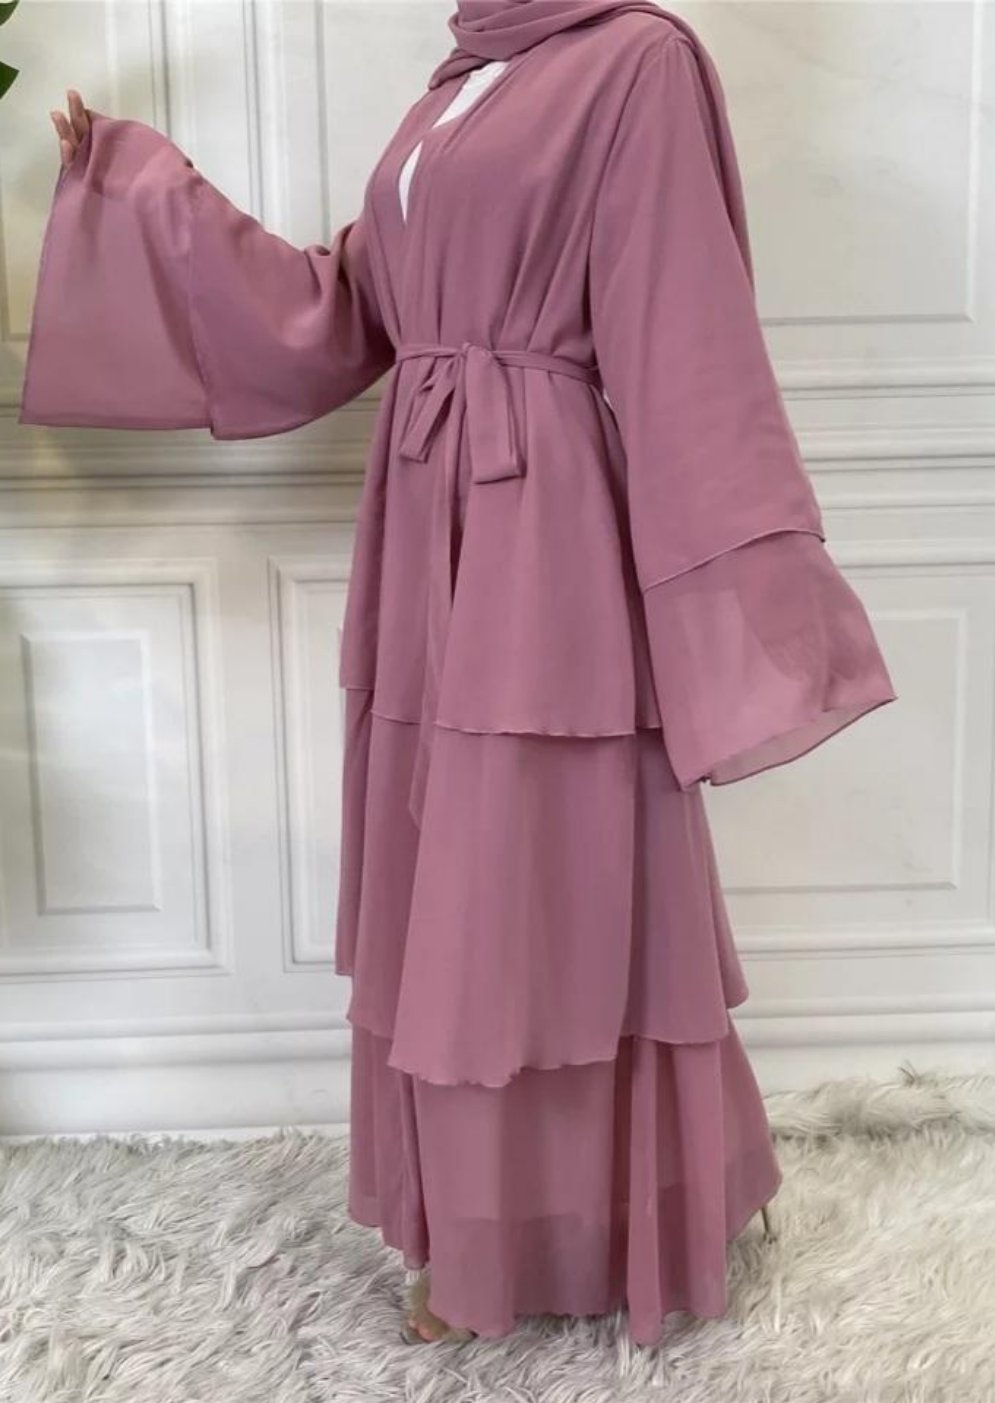 Double layered chiffon abaya – Abayat Qumasha Wa Naqsha